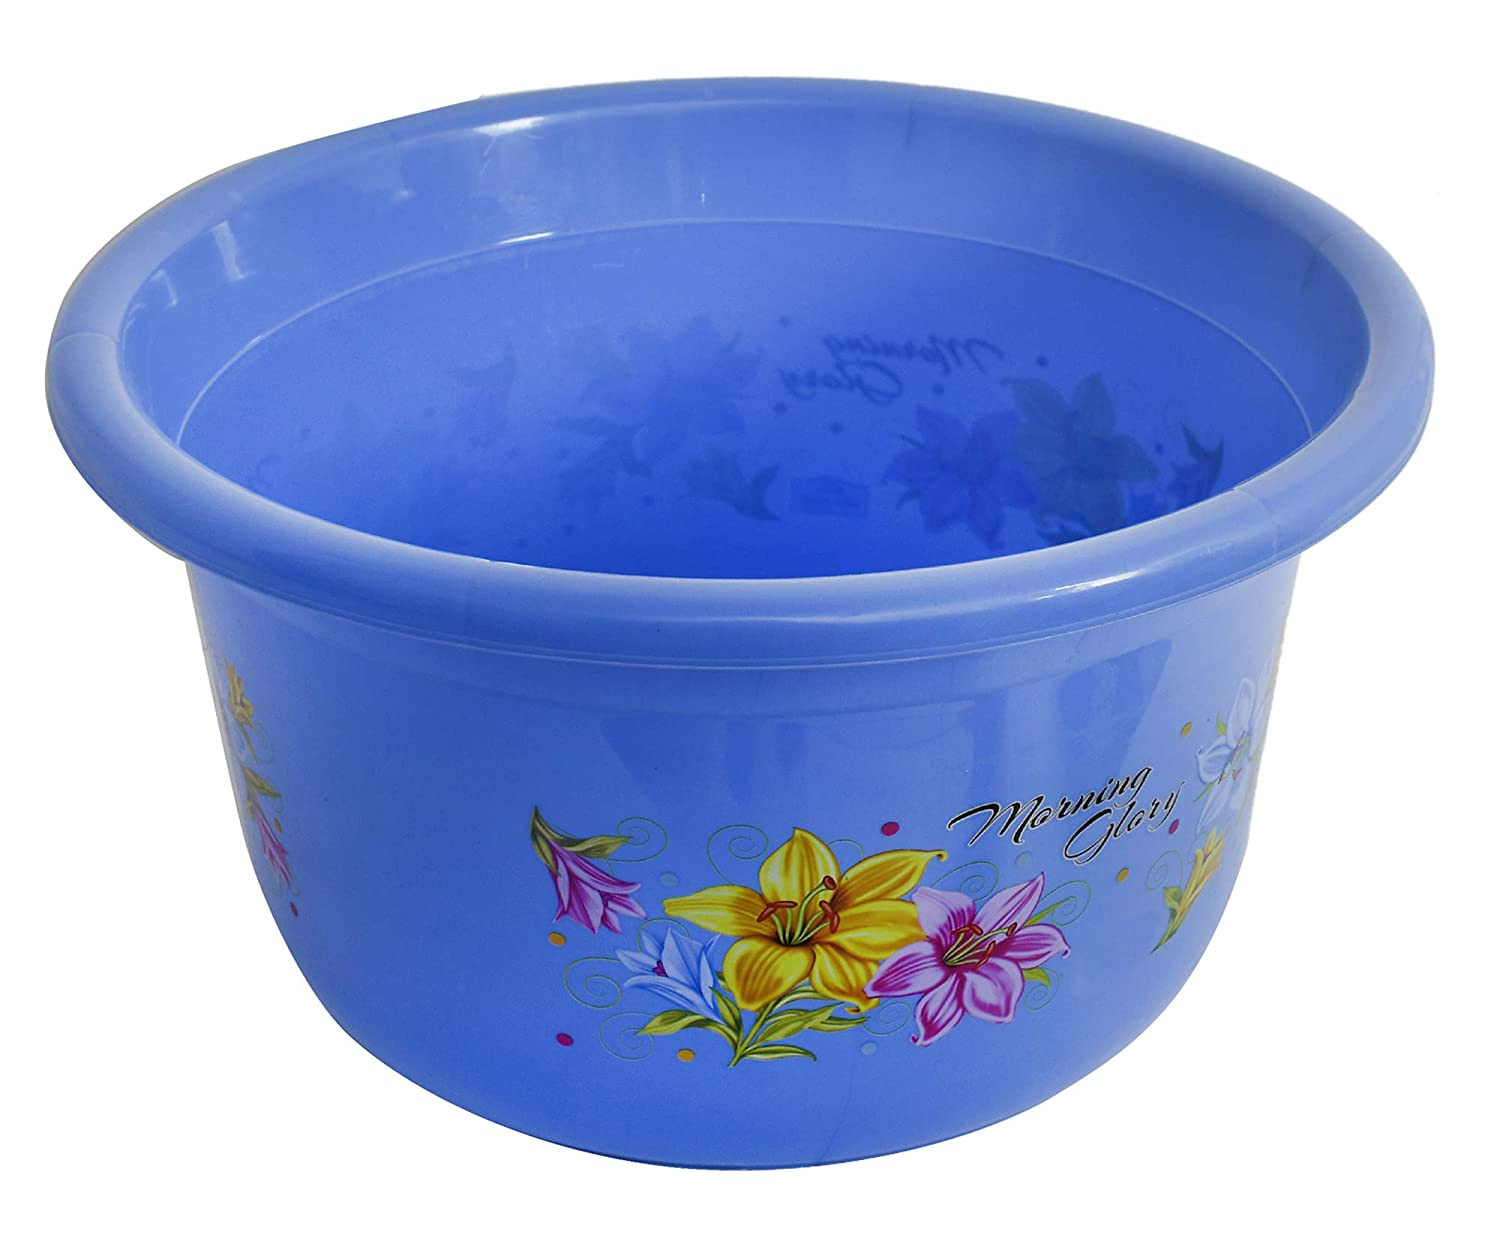 Kuber Industries Printed 2 Pieces Unbreakable Virgin Plastic Multipurpose Bucket & Tub Set (Blue)